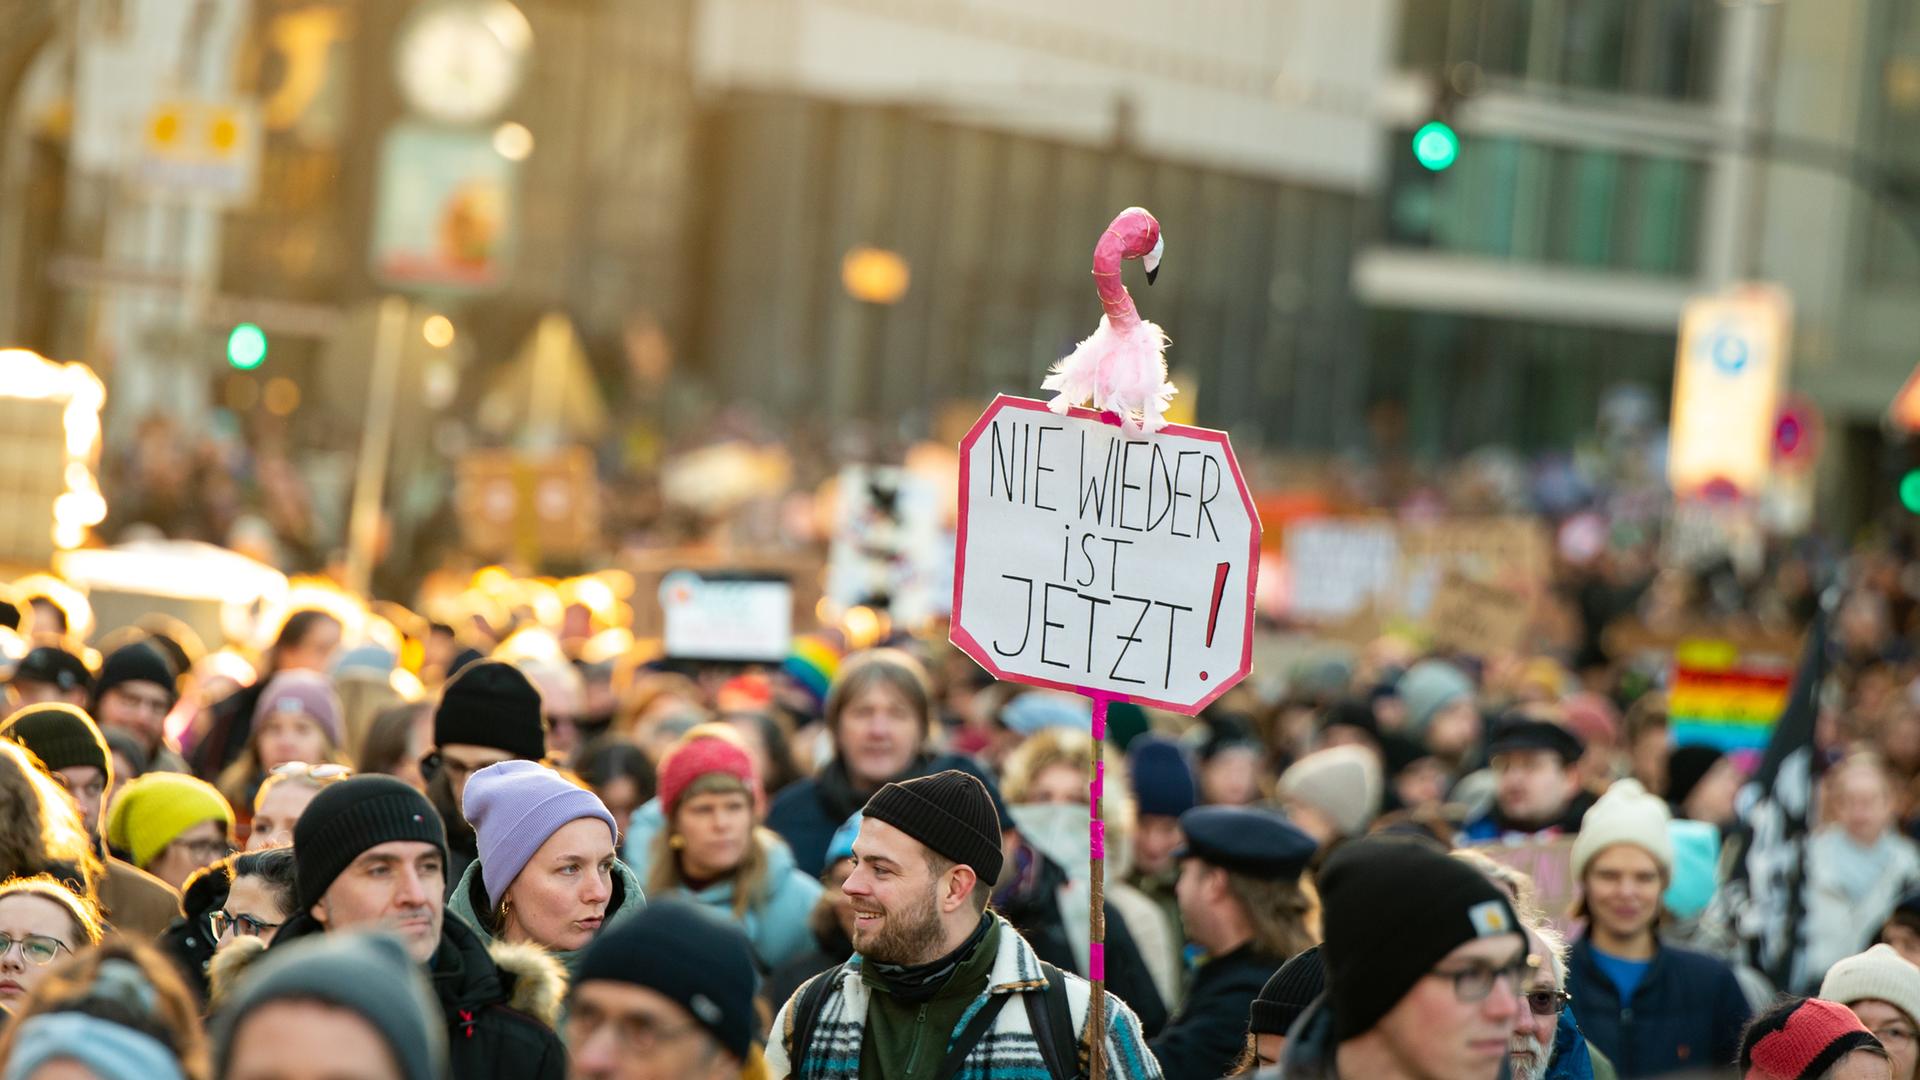 «Nie wieder ist jetzt» steht auf einem Plakat bei der Demonstration gegen Rechtsextremismus. Mit der Demonstration unter dem Motto «Für Vielfalt und unsere Demokratie - Hamburg steht zusammen gegen die AfD» wollen die Teilnehmenden ein Zeichen des Widerstands gegen rechtsextreme Umtriebe setzen.